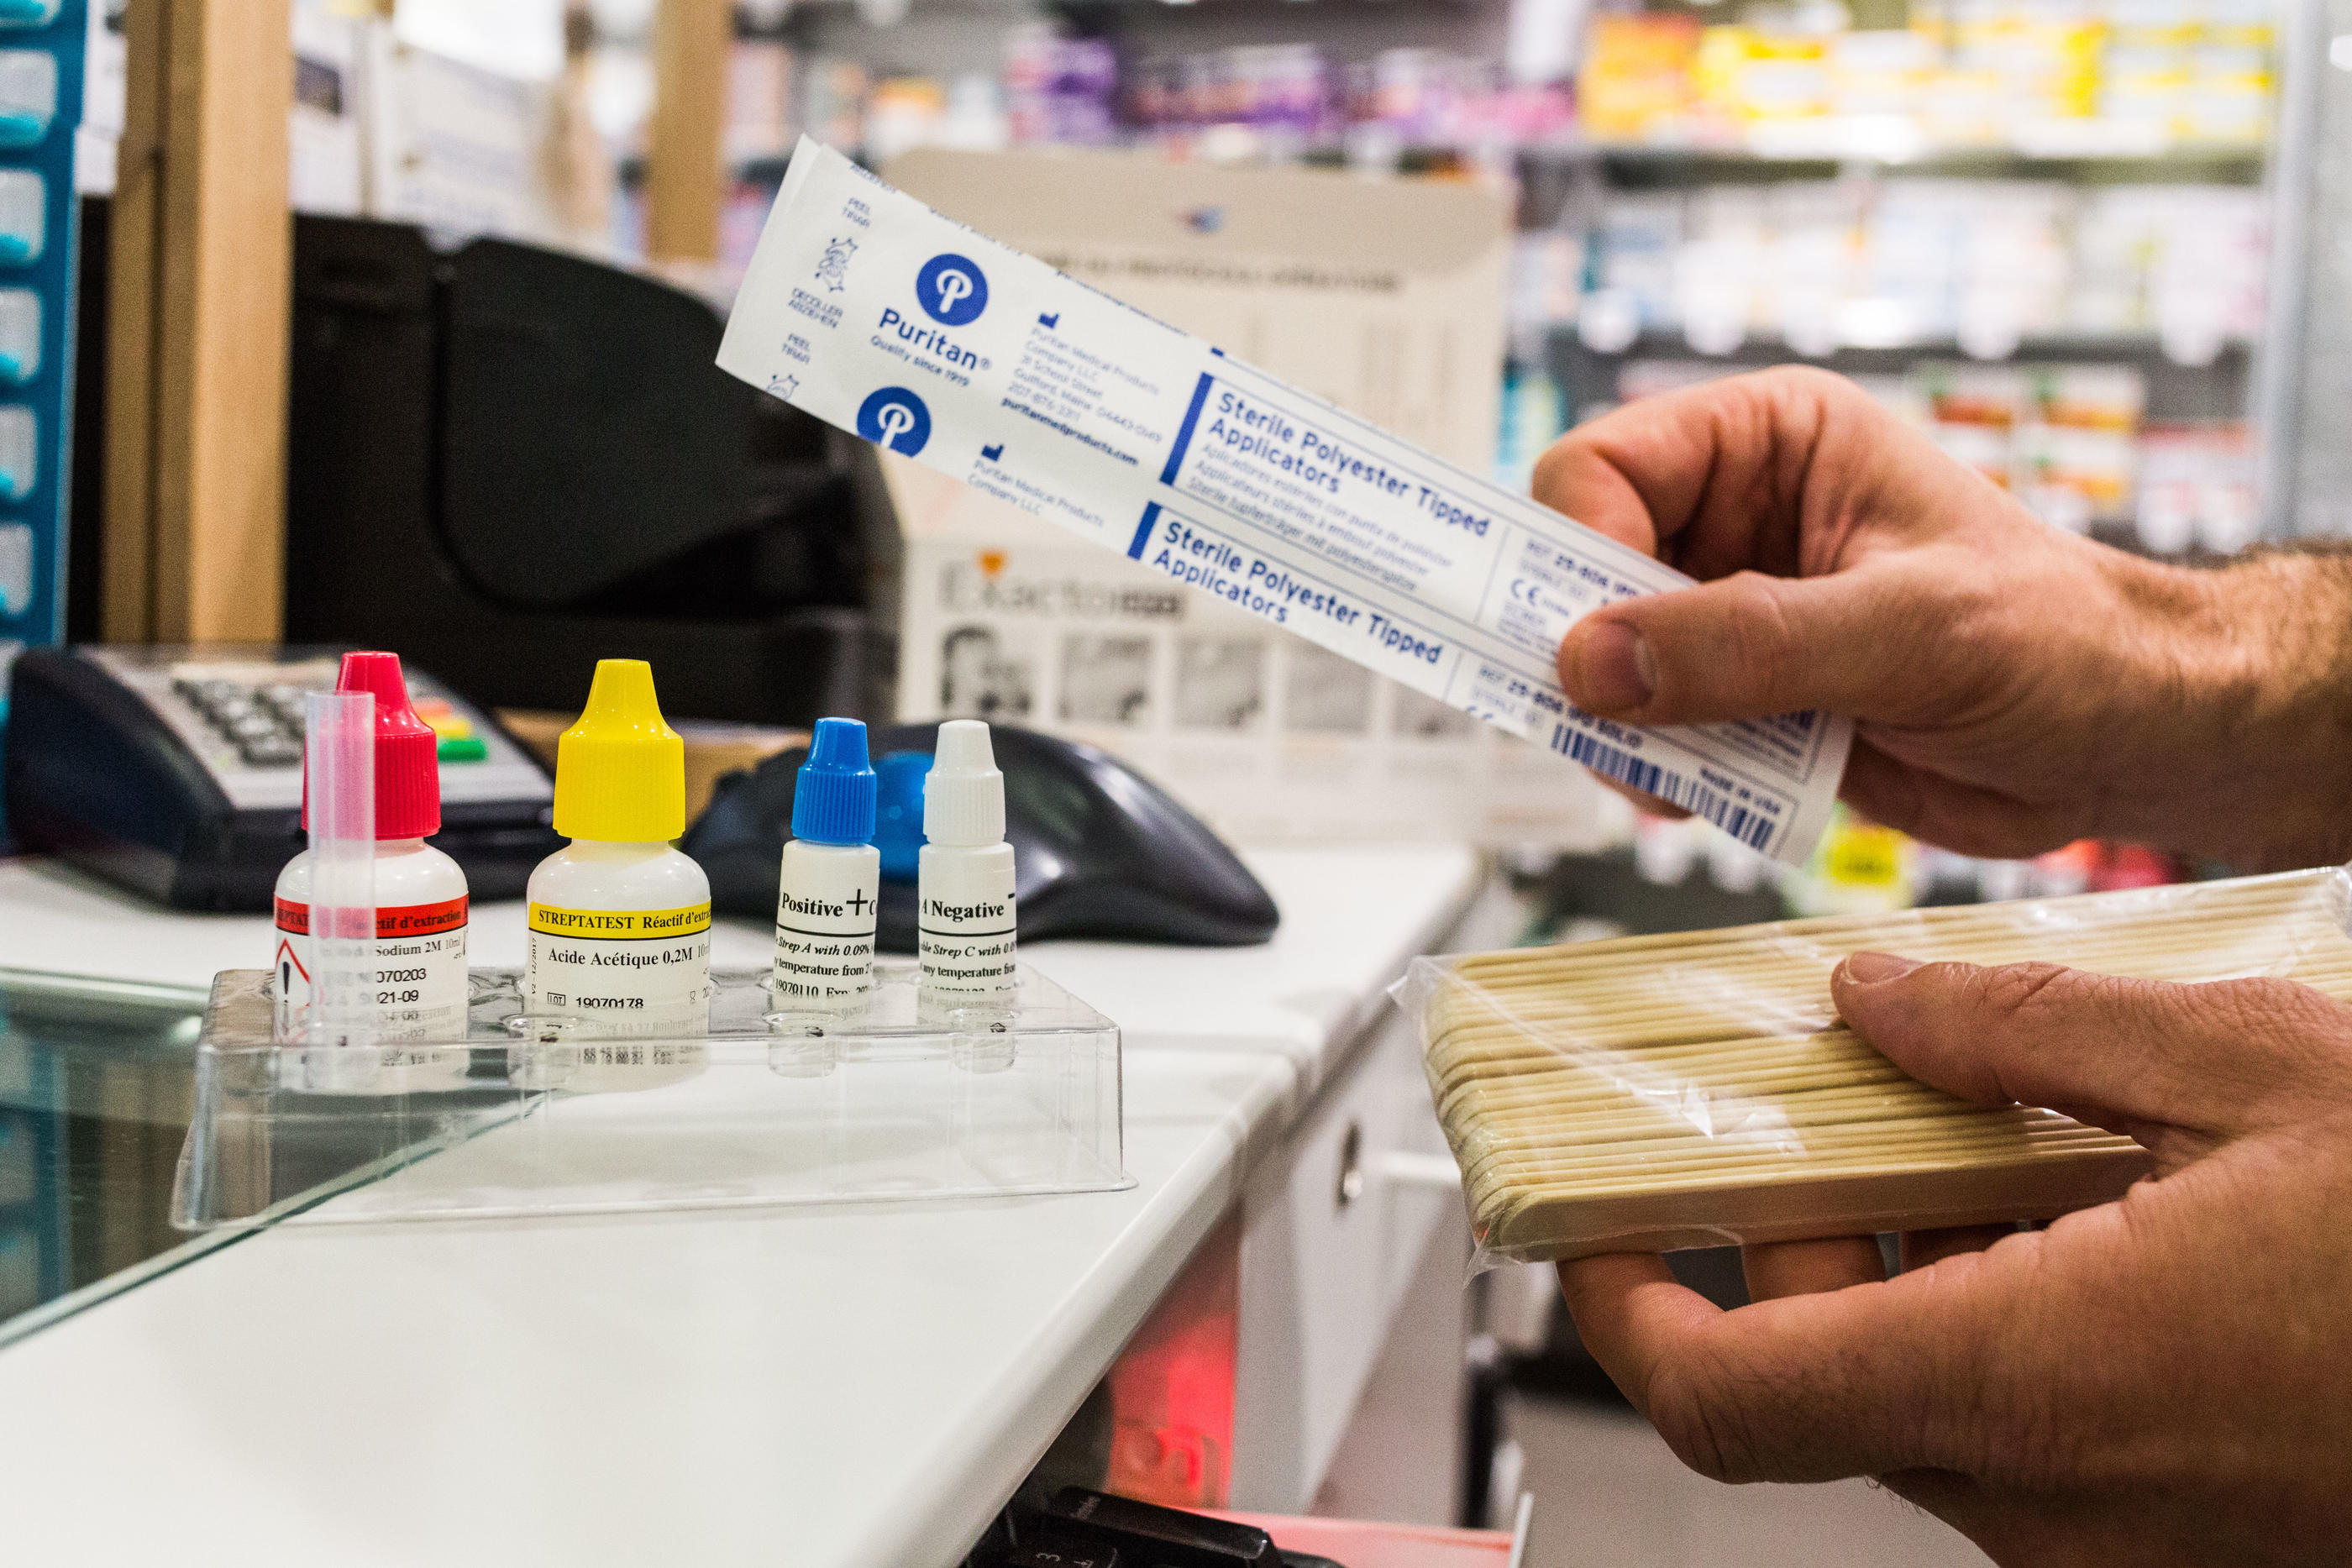 Les pharmaciens seront autorisés, dès l'année prochaine, à prescrire et délivrer des antibiotiques contre ces maladies. BURGER/PHANIE